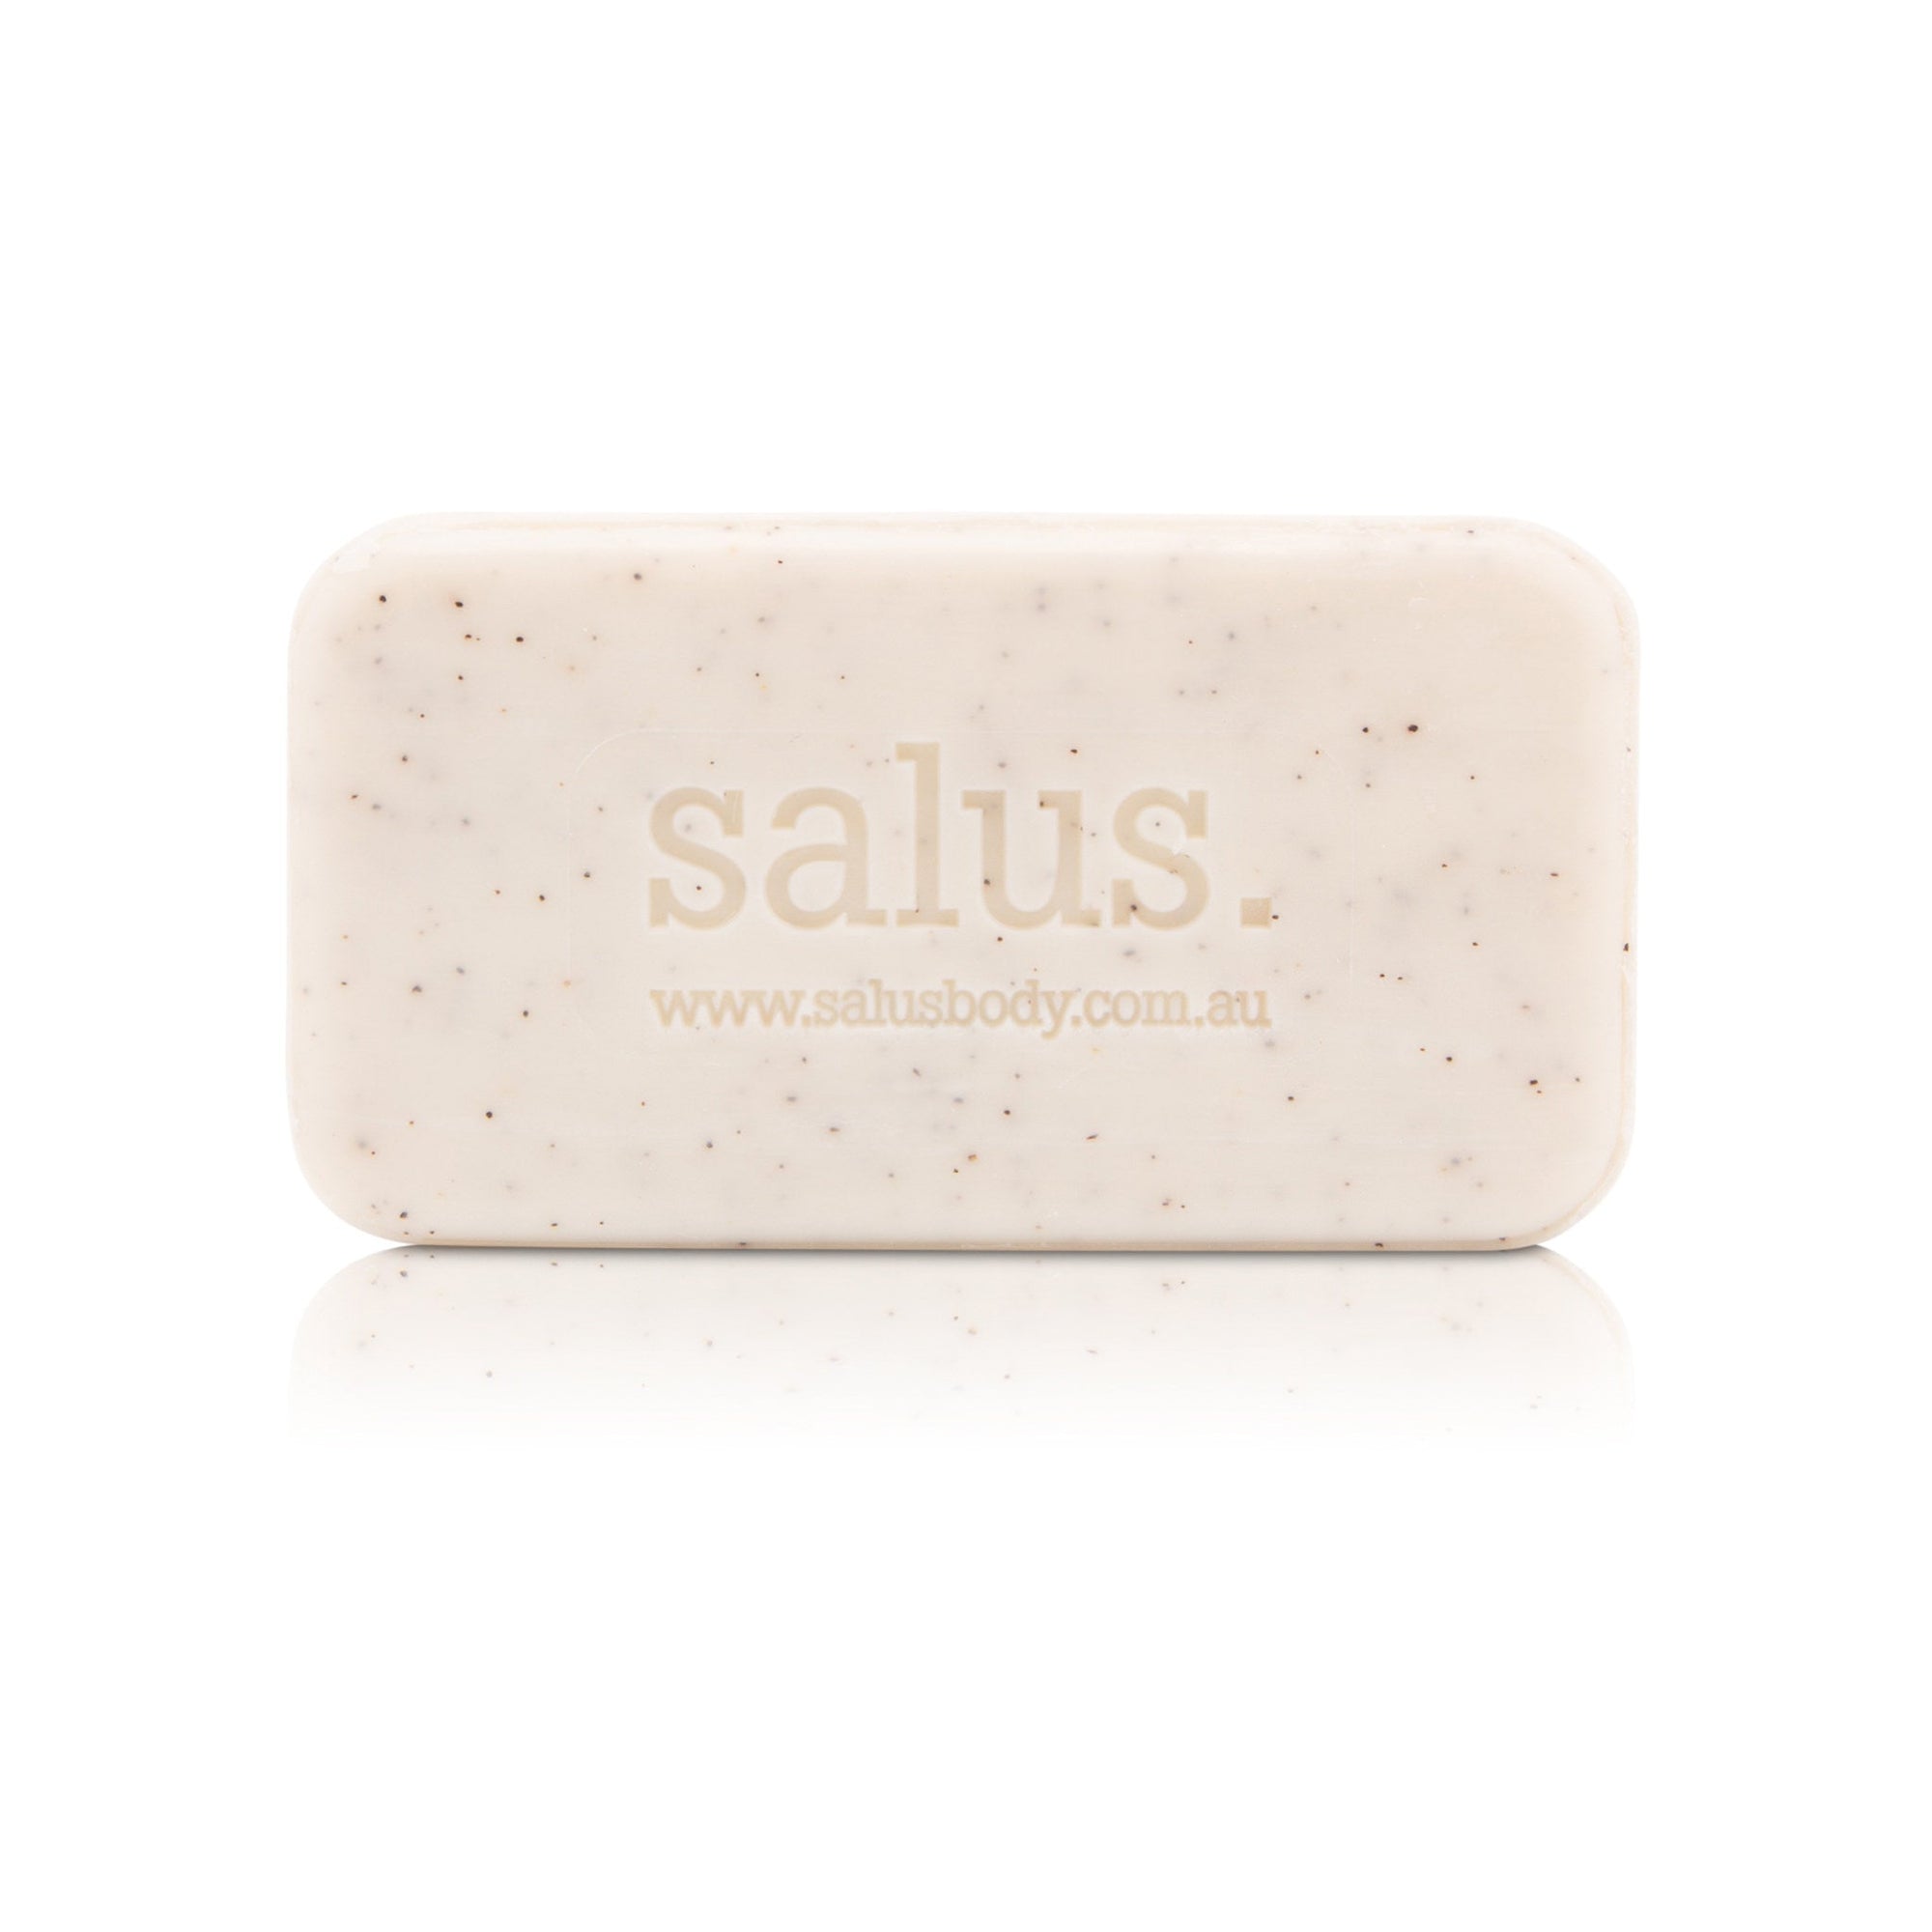 Salus Soap Bar - Exfoliating Jojoba Seed